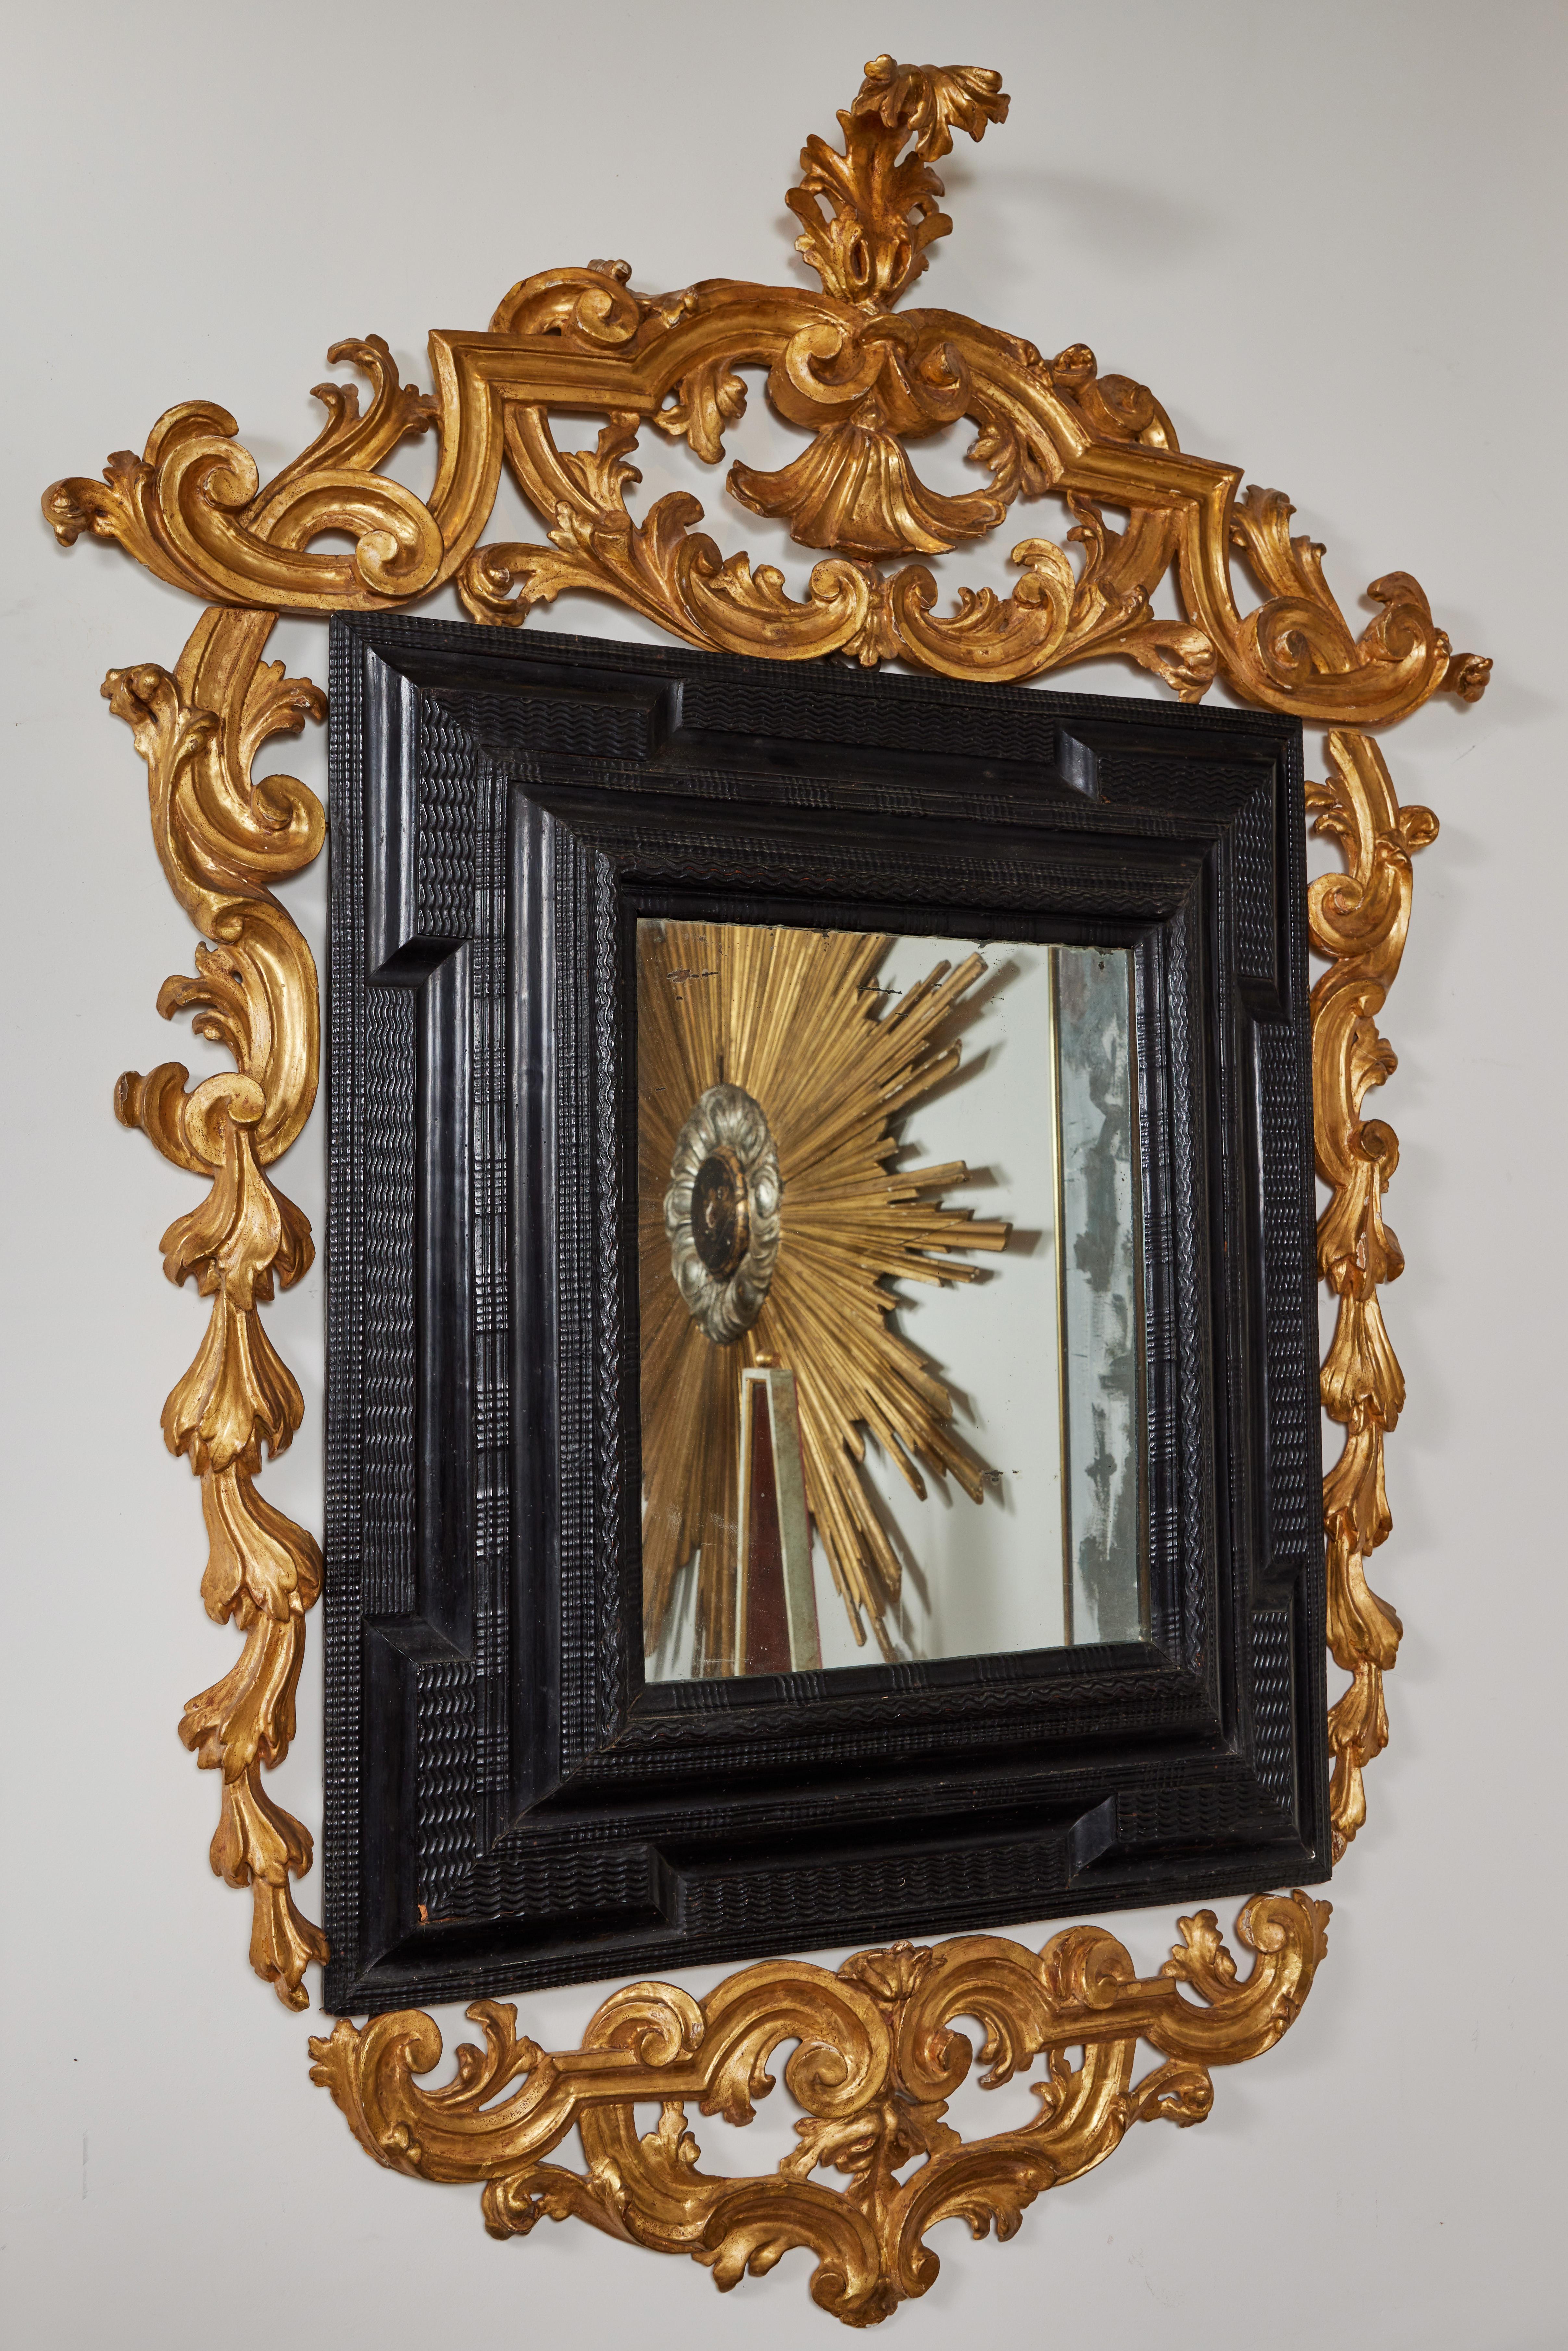 Auffälliger, handgeschnitzter, ebonisierter Spiegel im holländischen Stil, der durchgehend mit reliefartigen Wellenformen verziert ist. Das Ganze ist von einem durchbrochenen Rahmen aus vergoldetem Holz mit prächtigem Rankenwerk umgeben und mit